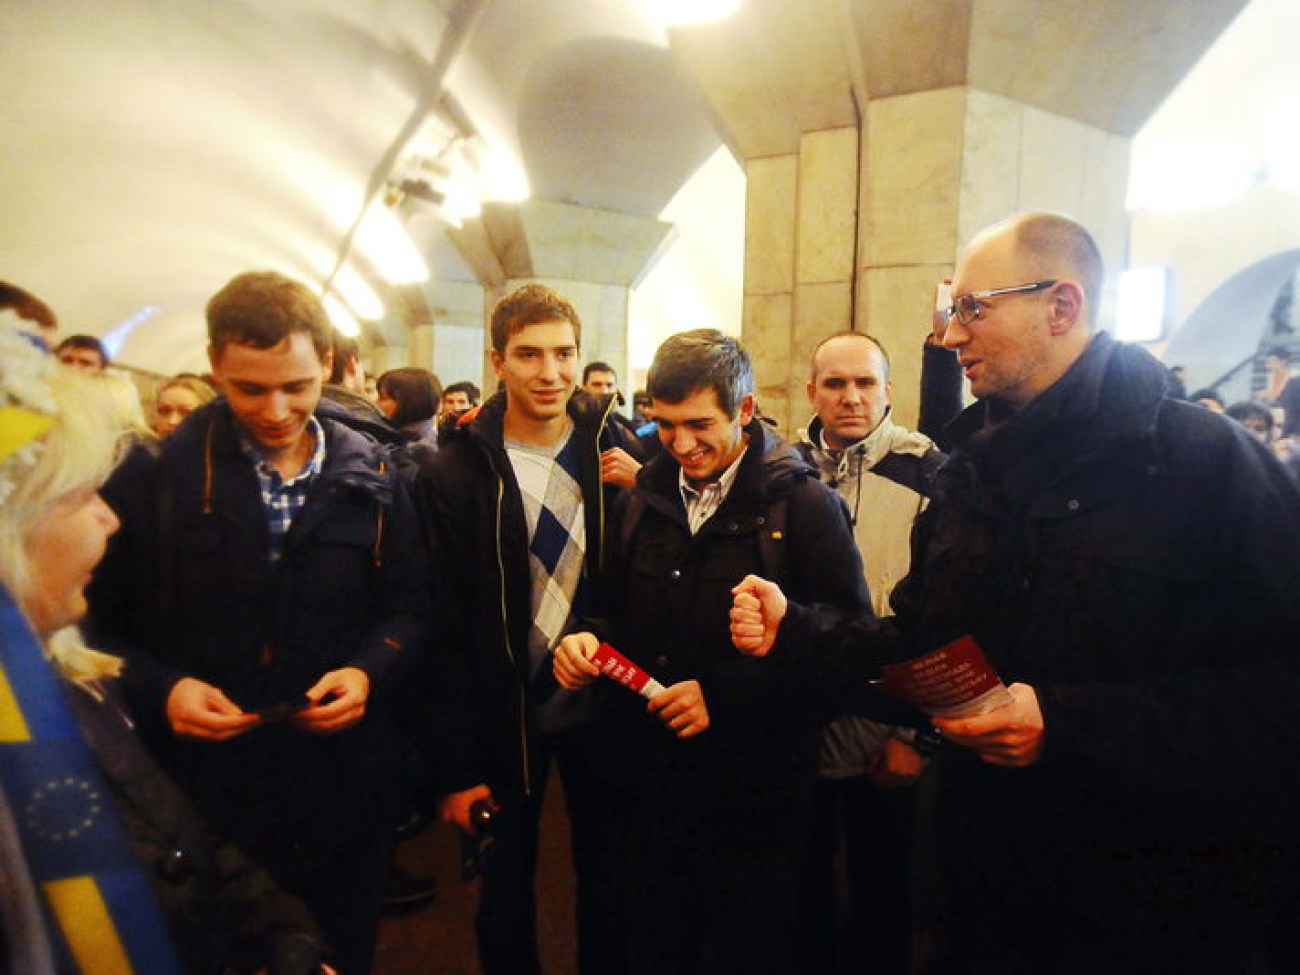 Вечерний Евро-Майдан: люди под дождем и политики с листовками, 22 ноября 2013г.